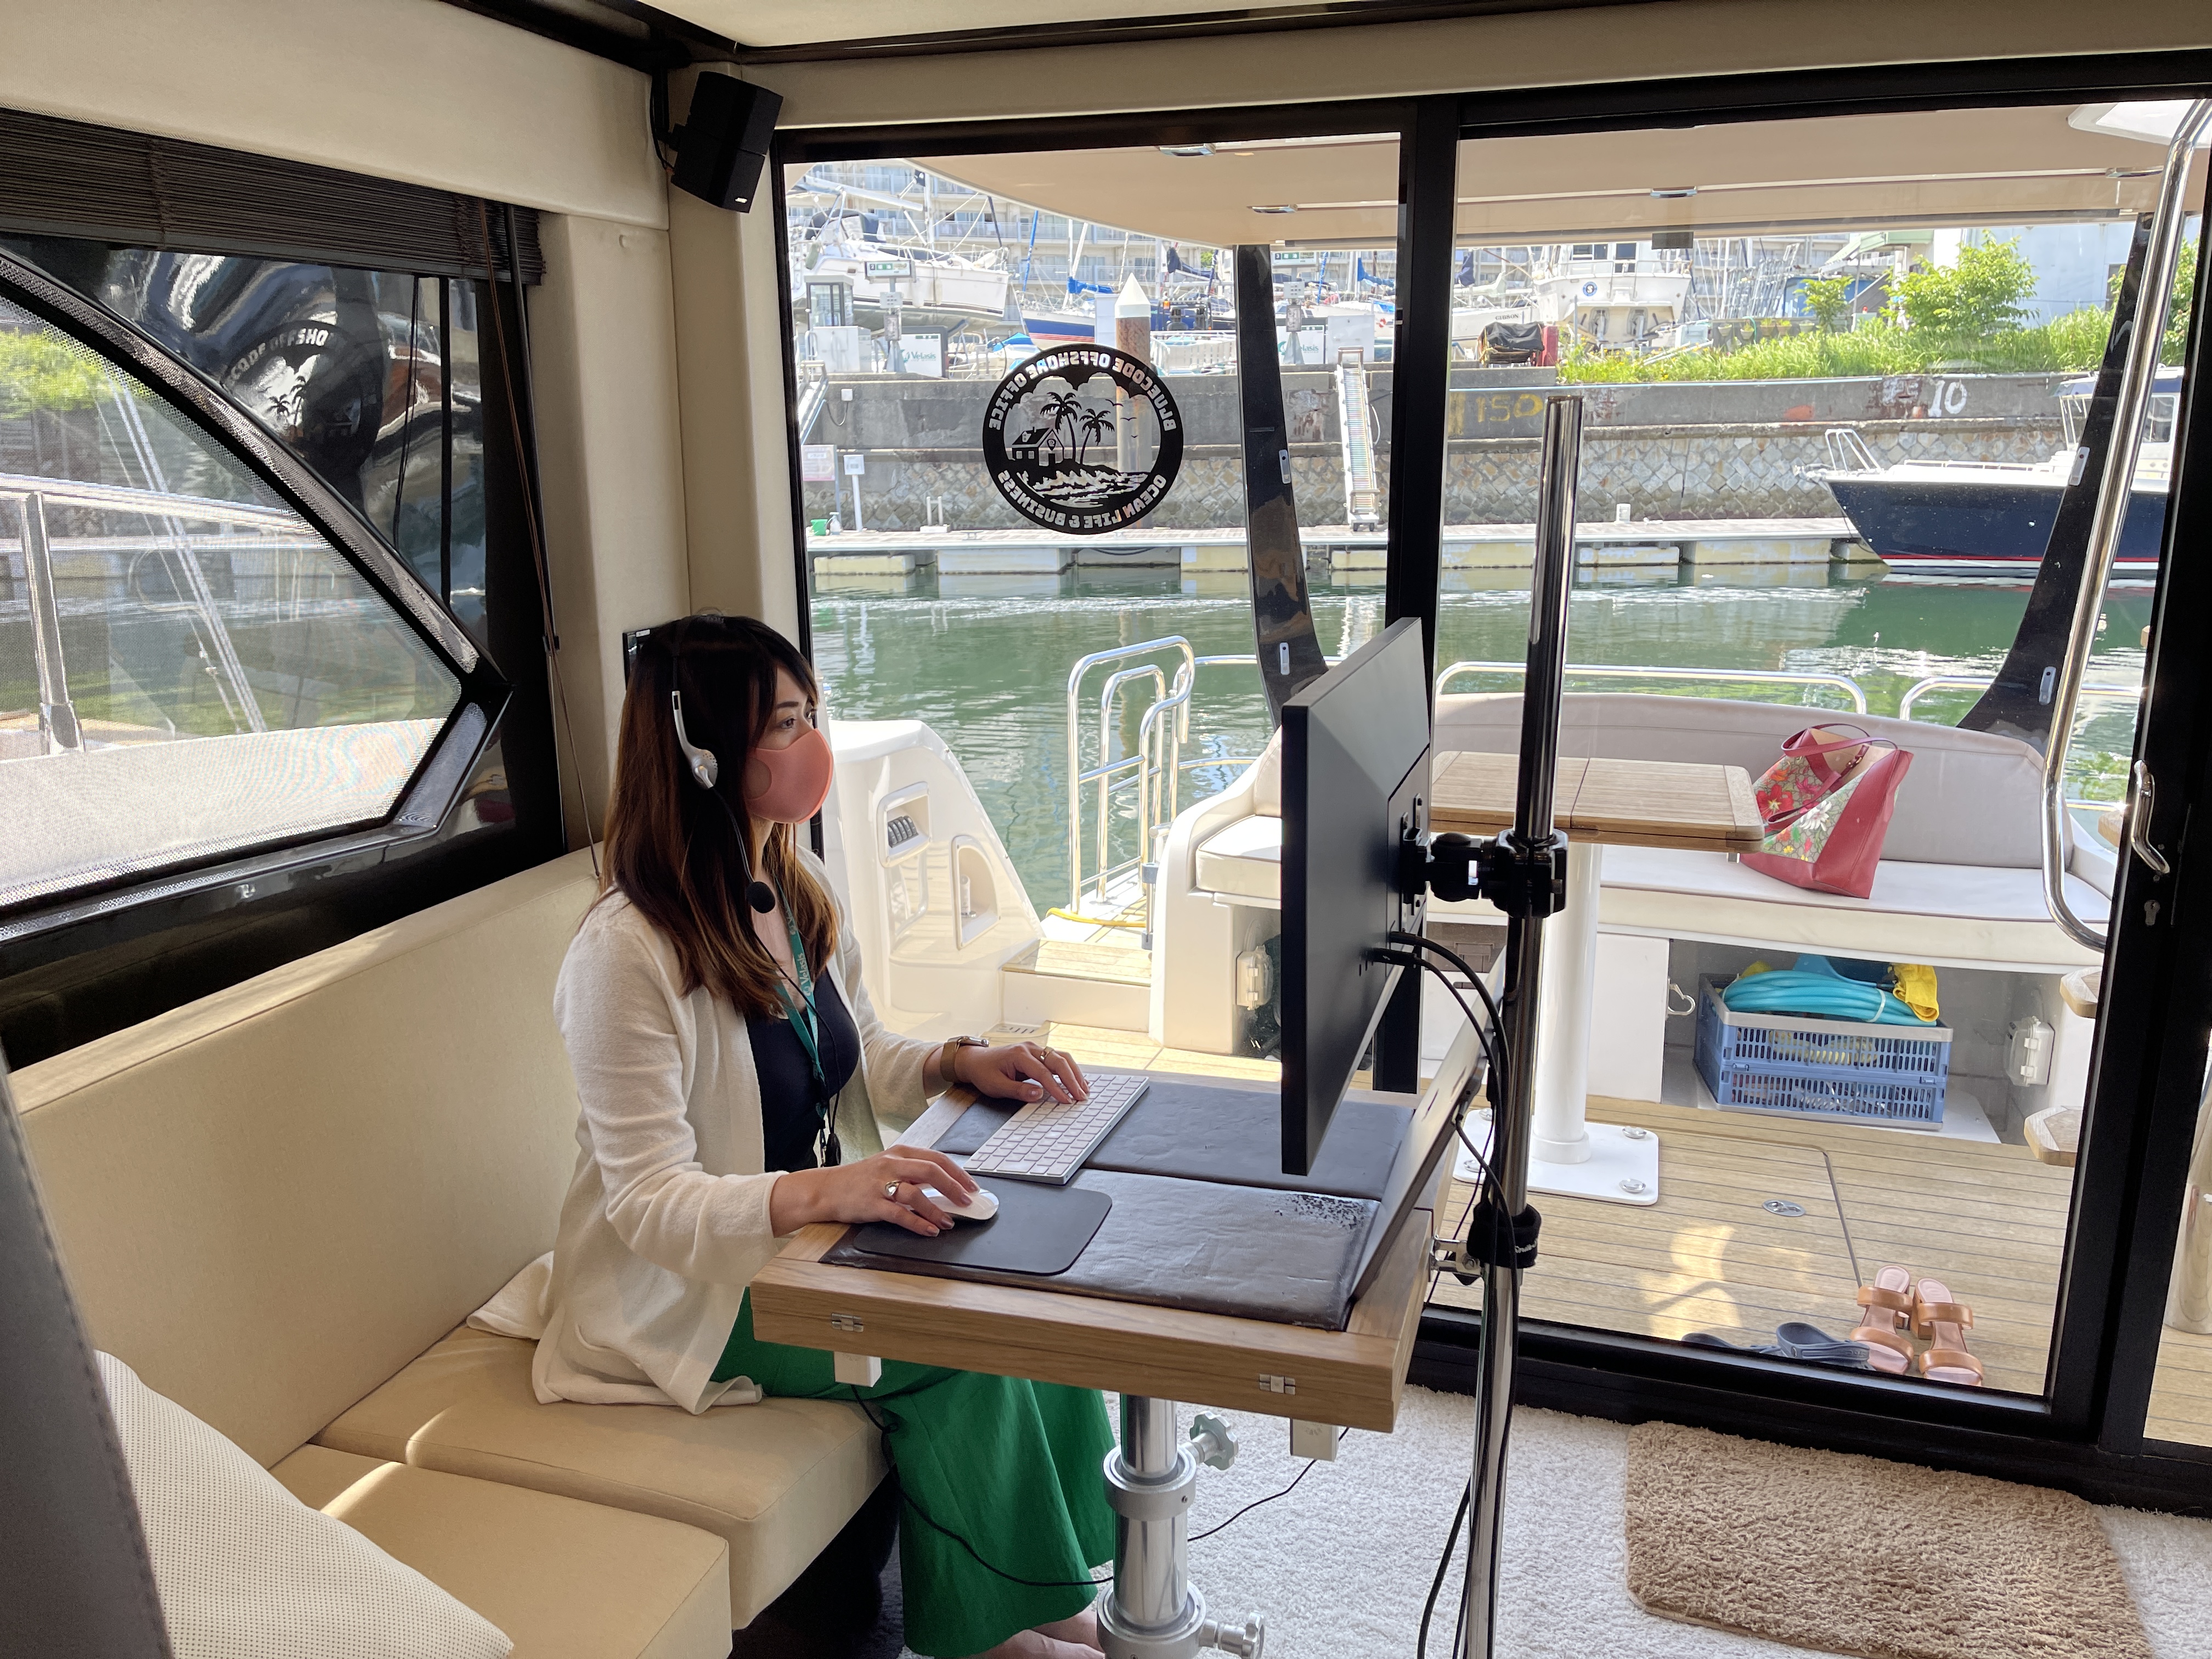 鎌倉・横浜オフィスのほか、イタリア製クルーザー「SESSA40」をオフィス仕様に改装し、オフィスとして使用できるようにしました。船内には大型モニターを設置し、快適に仕事ができる環境を整備しています。